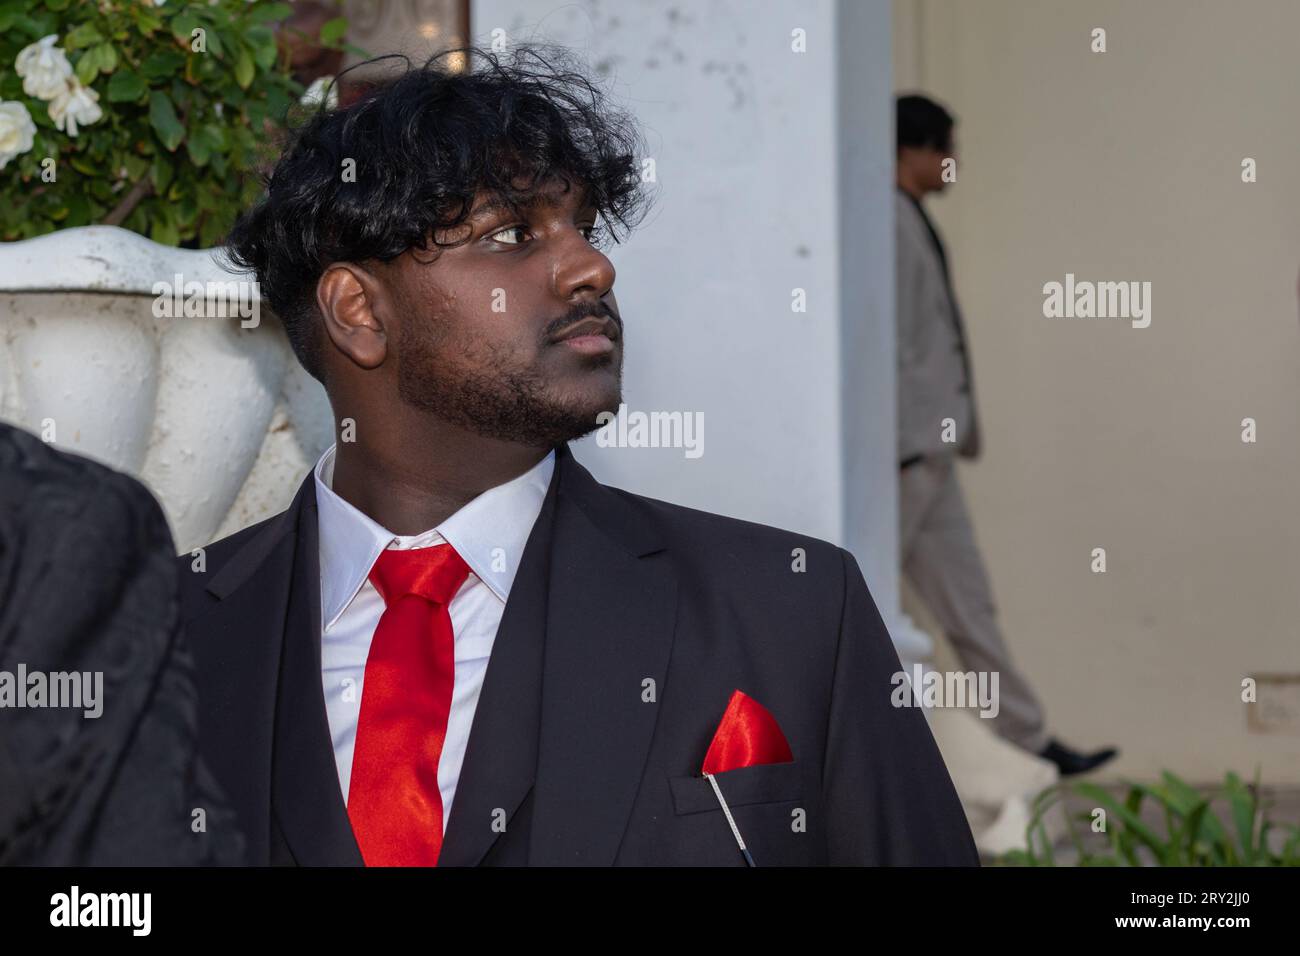 In einer Nahaufnahme blickt ein junger indischer Mann mit roter Krawatte und rotem Anzug zur Seite, während ein anderer Mann hinter einer Säule im Hintergrund heraustritt Stockfoto